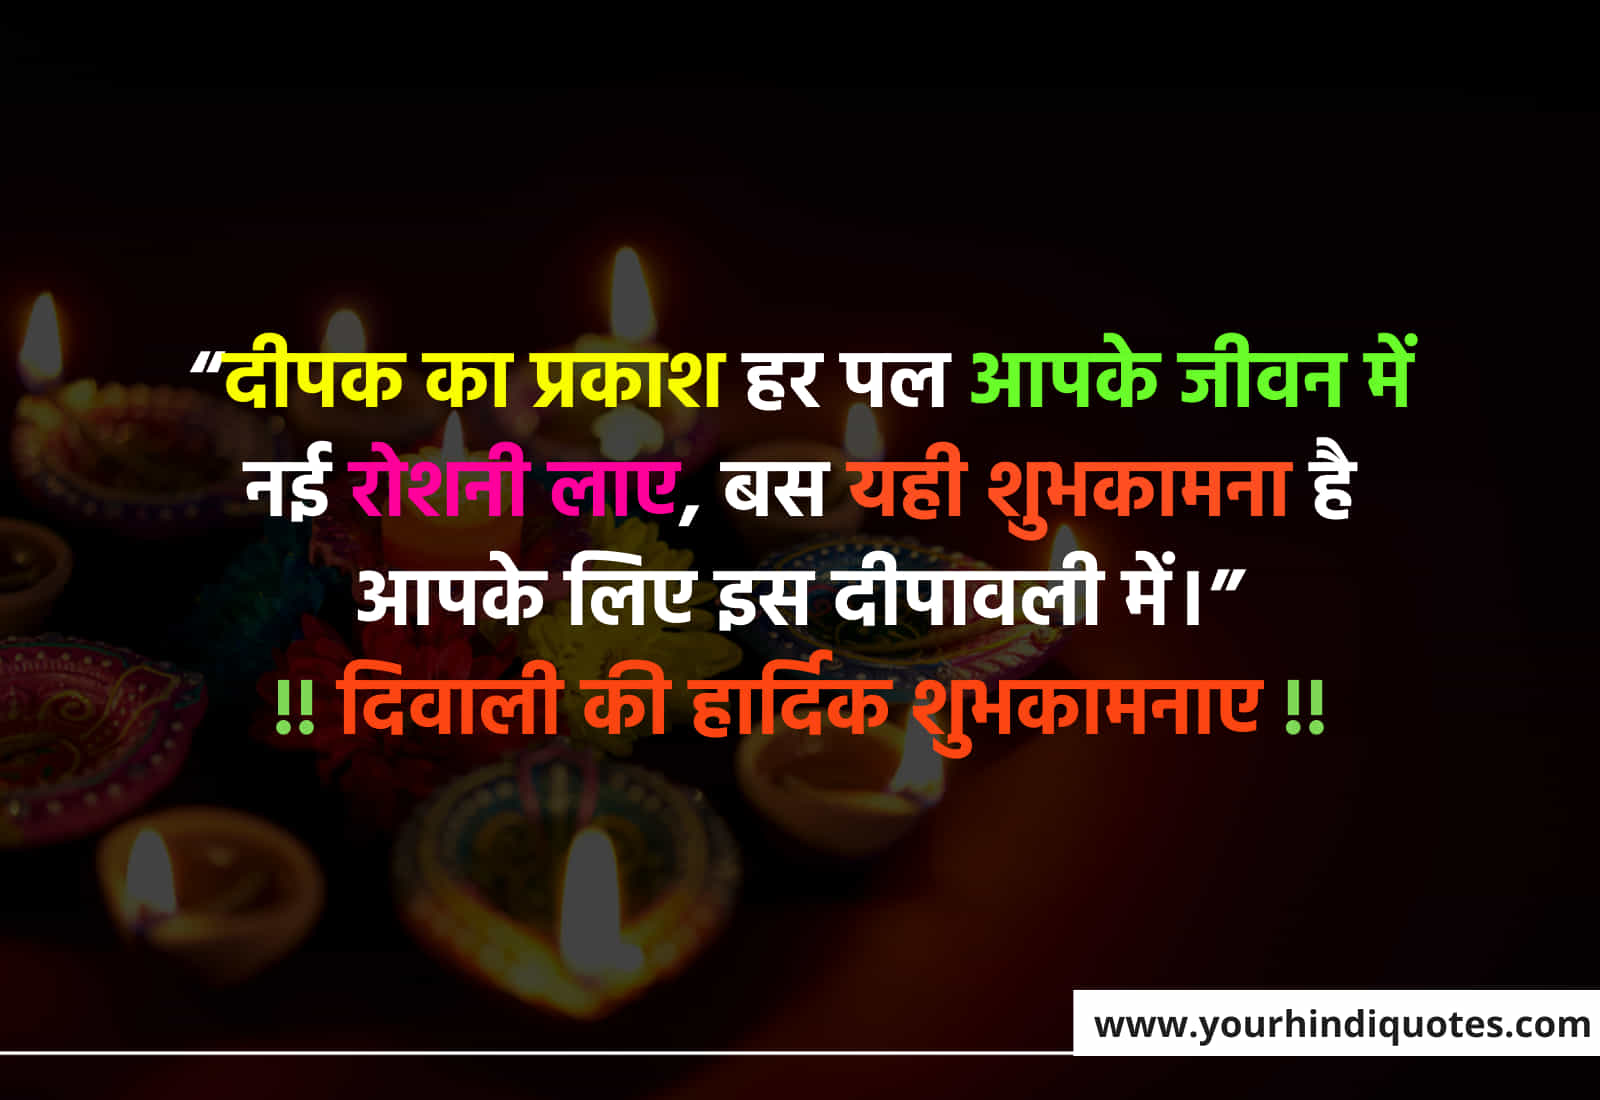 Best Diwali Messages